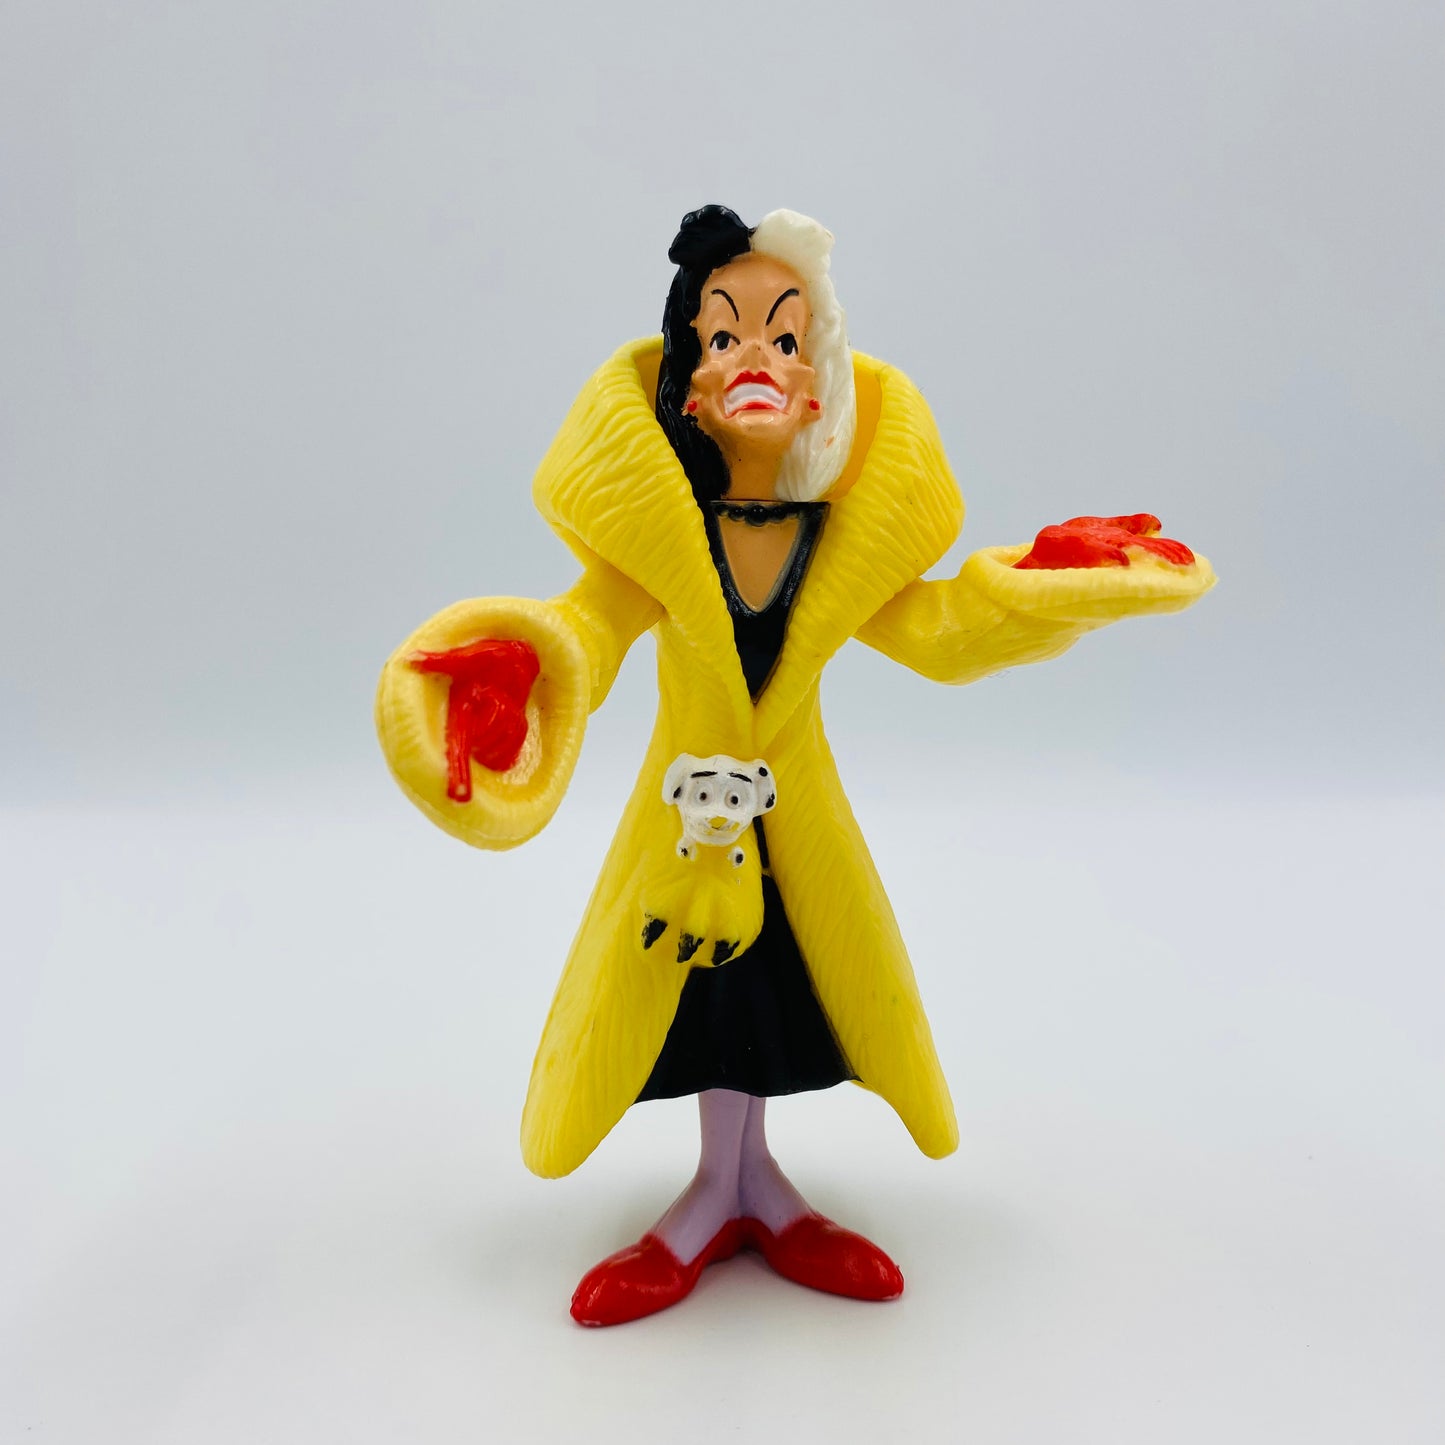 101 Dalmatians Cruella De Vil McDonald's Happy Meal toy (1991) loose